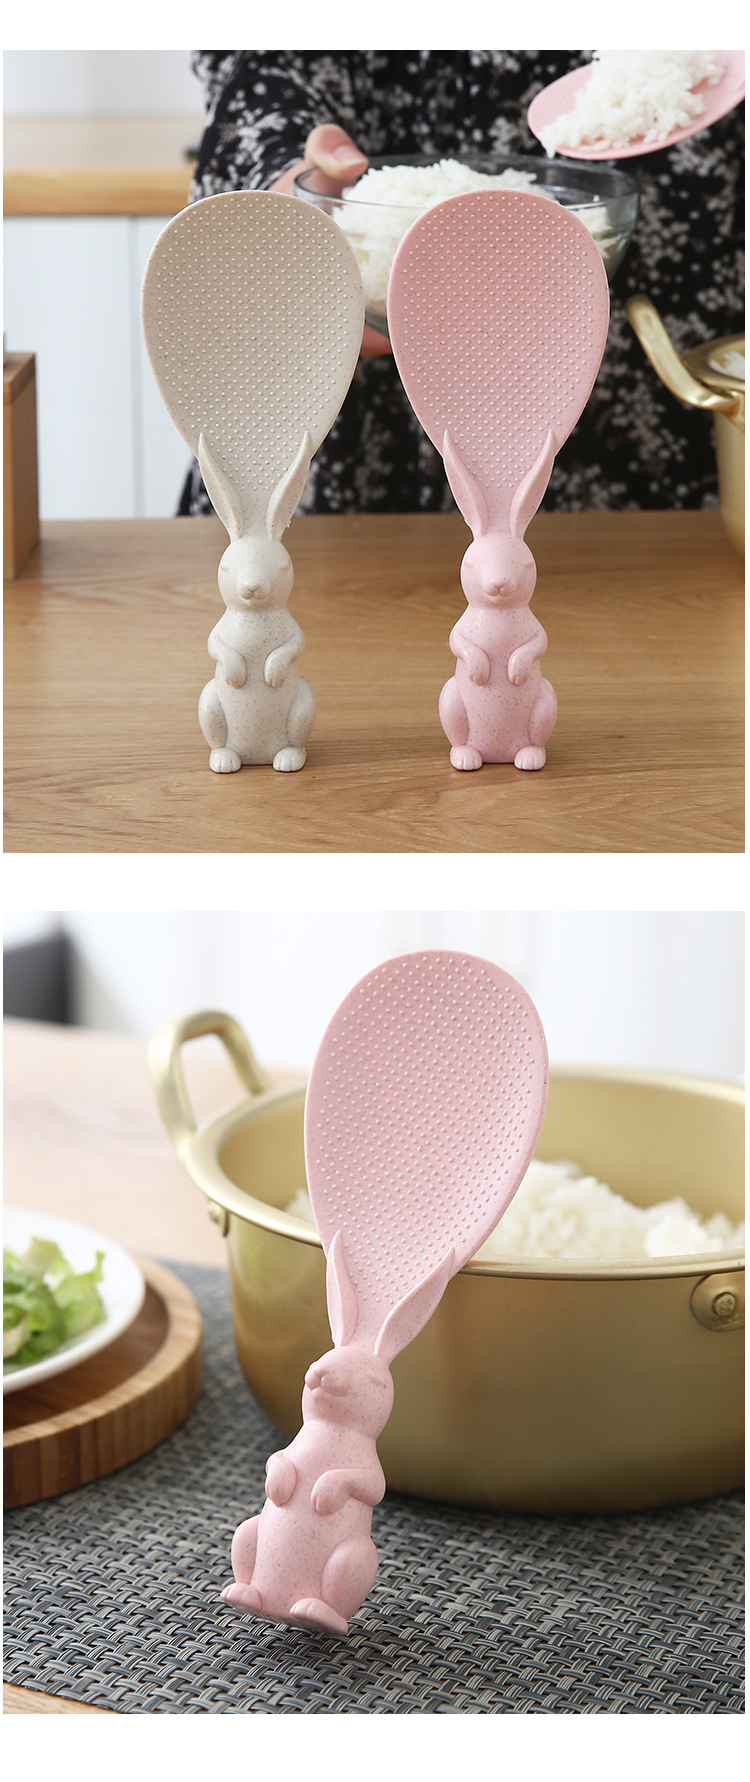 可愛兔子站立式飯匙 小麥秸稈兔子造型飯匙 創意立體兔子造型飯匙3